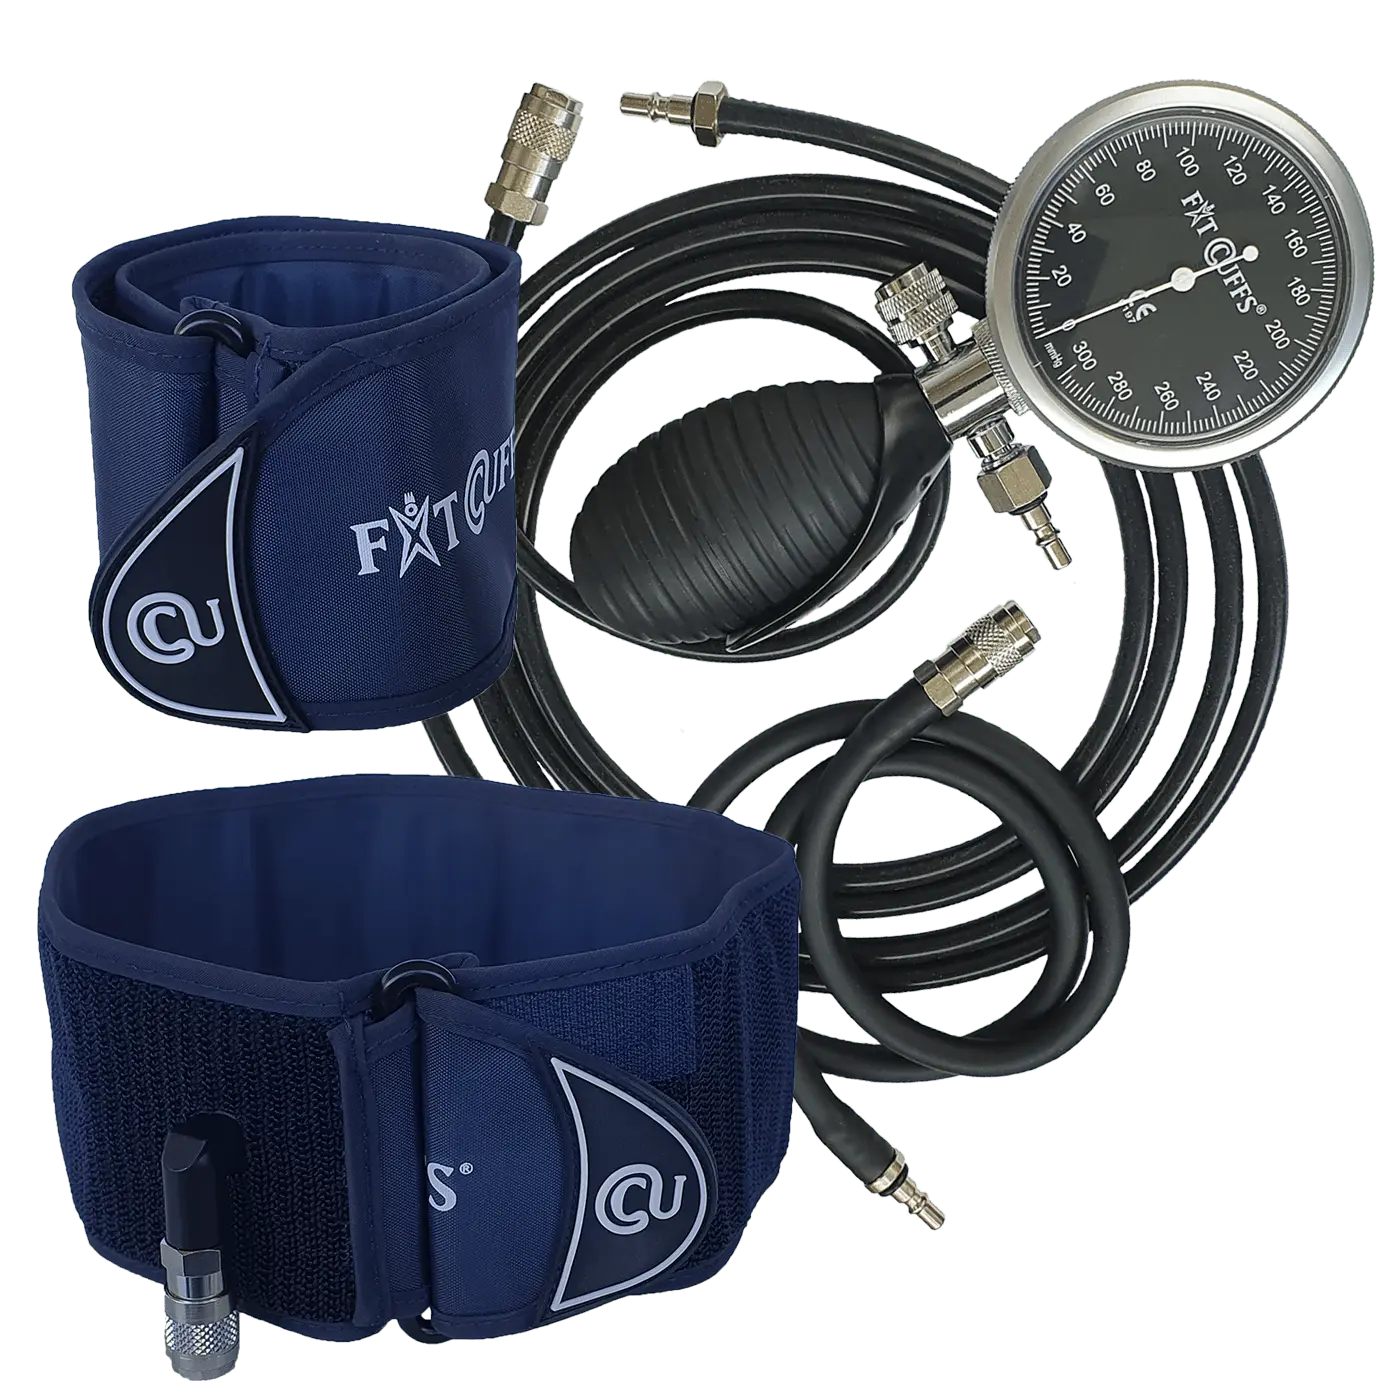 Billede af Fit Cuffs - Performance Upper V3.1 - Wireless (Long + Short hose - Blue